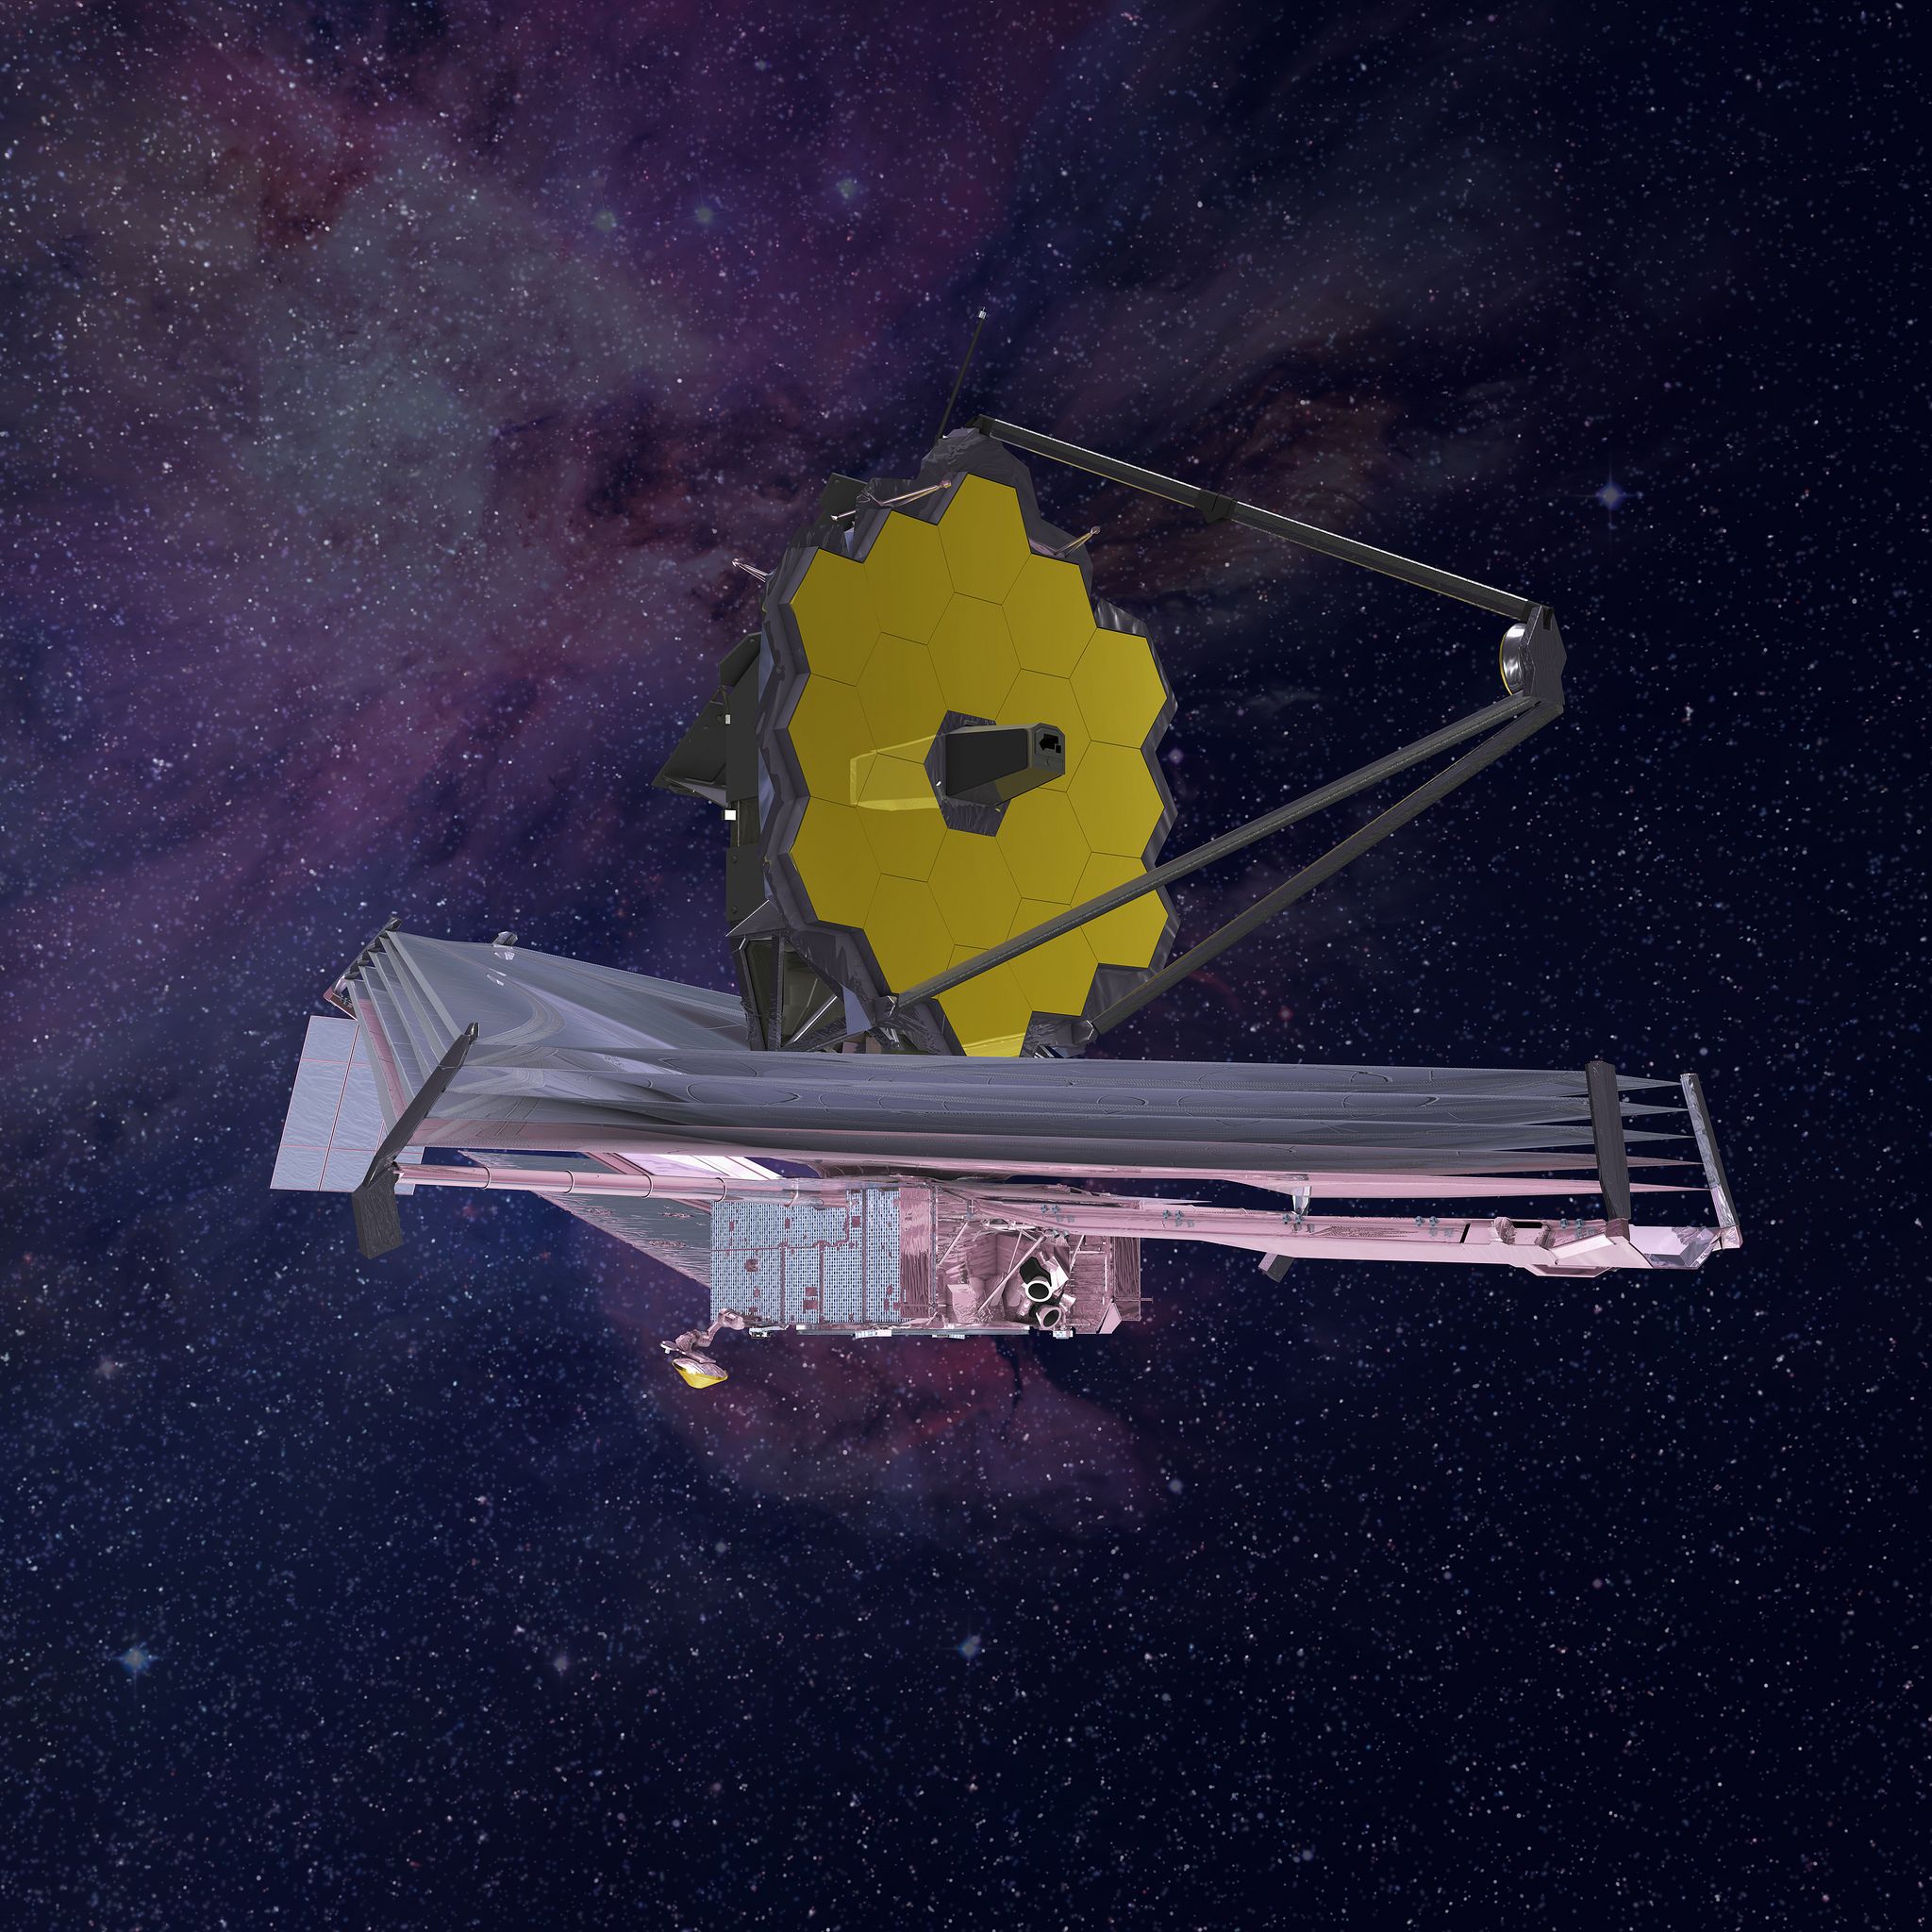 Das James-Webb-Weltraumteleskop ist seit sechs Monaten im All. Nun werden die ersten Bilder der Öffentlichkeit präsentiert / NASA/ESA